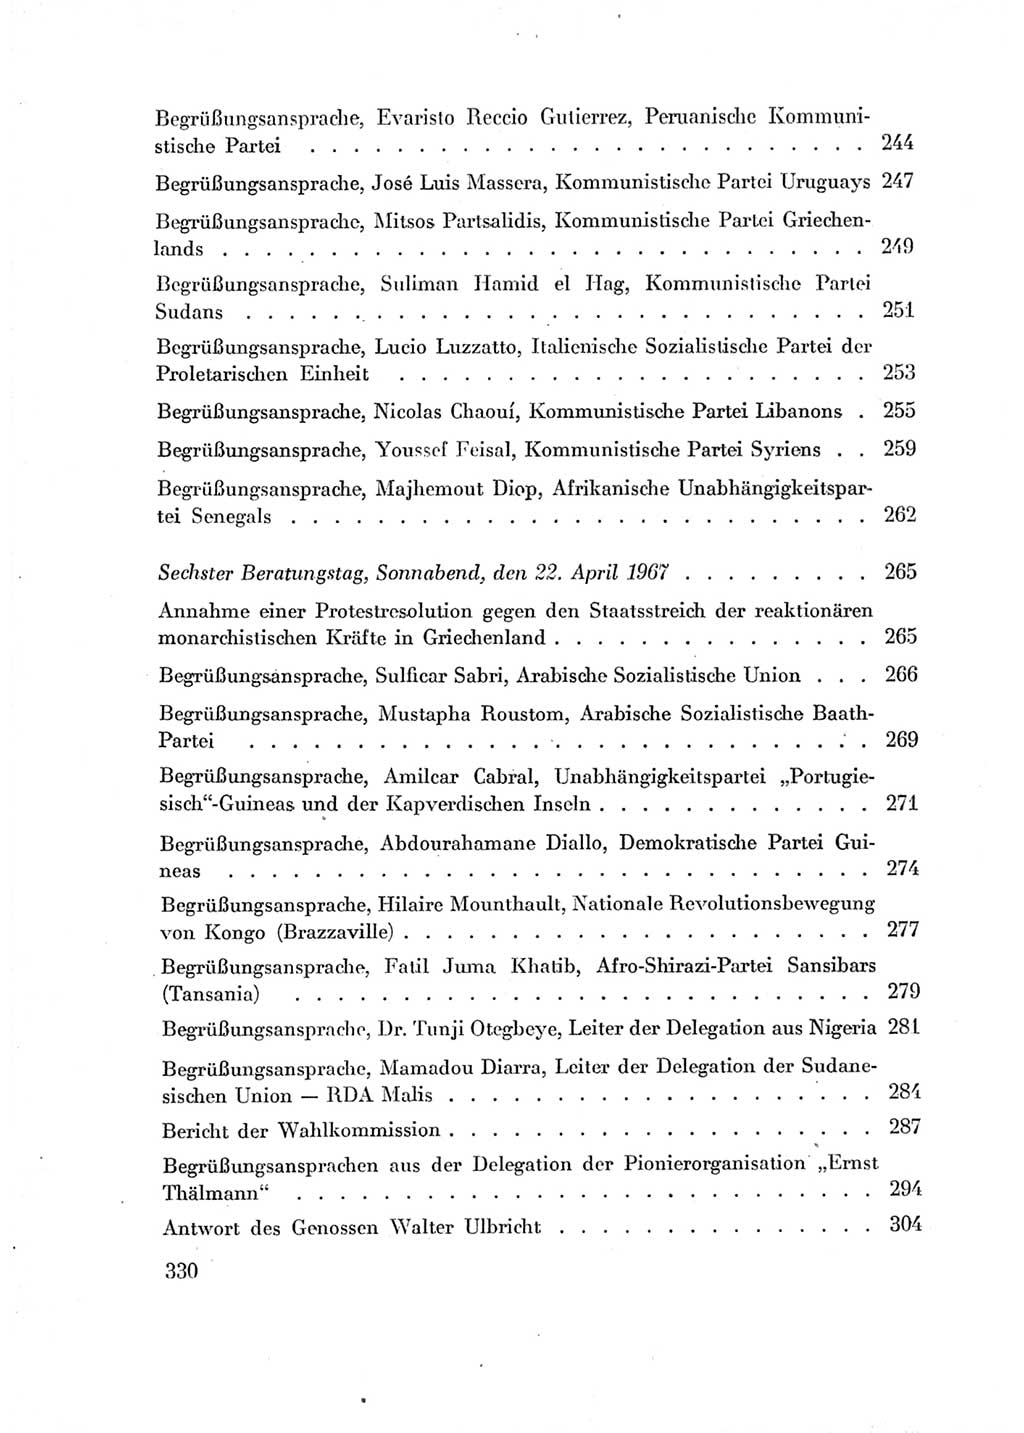 Protokoll der Verhandlungen des Ⅶ. Parteitages der Sozialistischen Einheitspartei Deutschlands (SED) [Deutsche Demokratische Republik (DDR)] 1967, Band Ⅱ, Seite 330 (Prot. Verh. Ⅶ. PT SED DDR 1967, Bd. Ⅱ, S. 330)